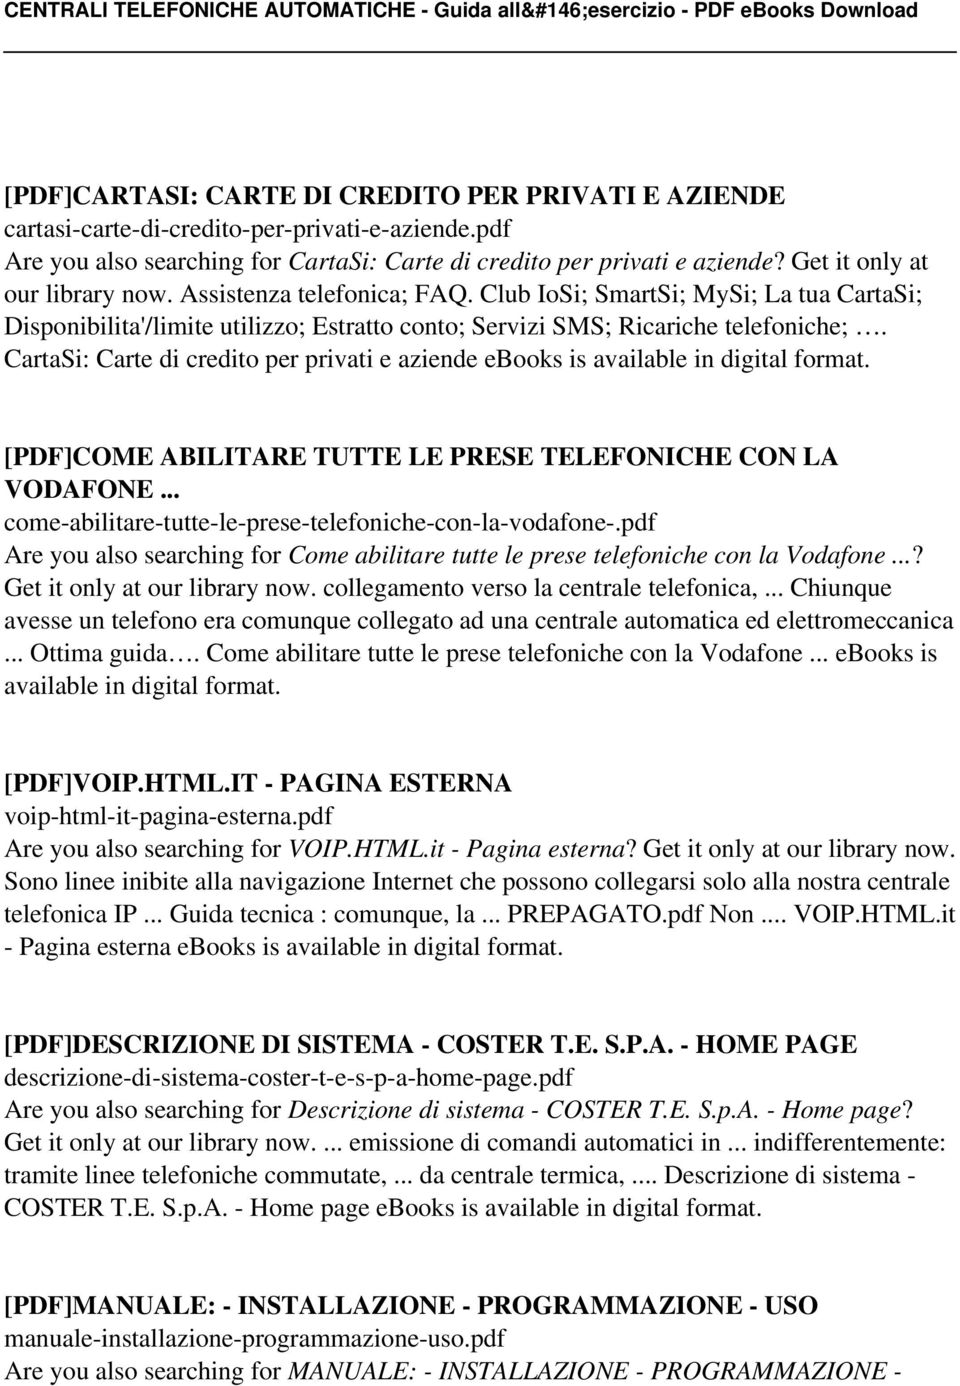 CartaSi: Carte di credito per privati e aziende ebooks is [PDF]COME ABILITARE TUTTE LE PRESE TELEFONICHE CON LA VODAFONE... come-abilitare-tutte-le-prese-telefoniche-con-la-vodafone-.